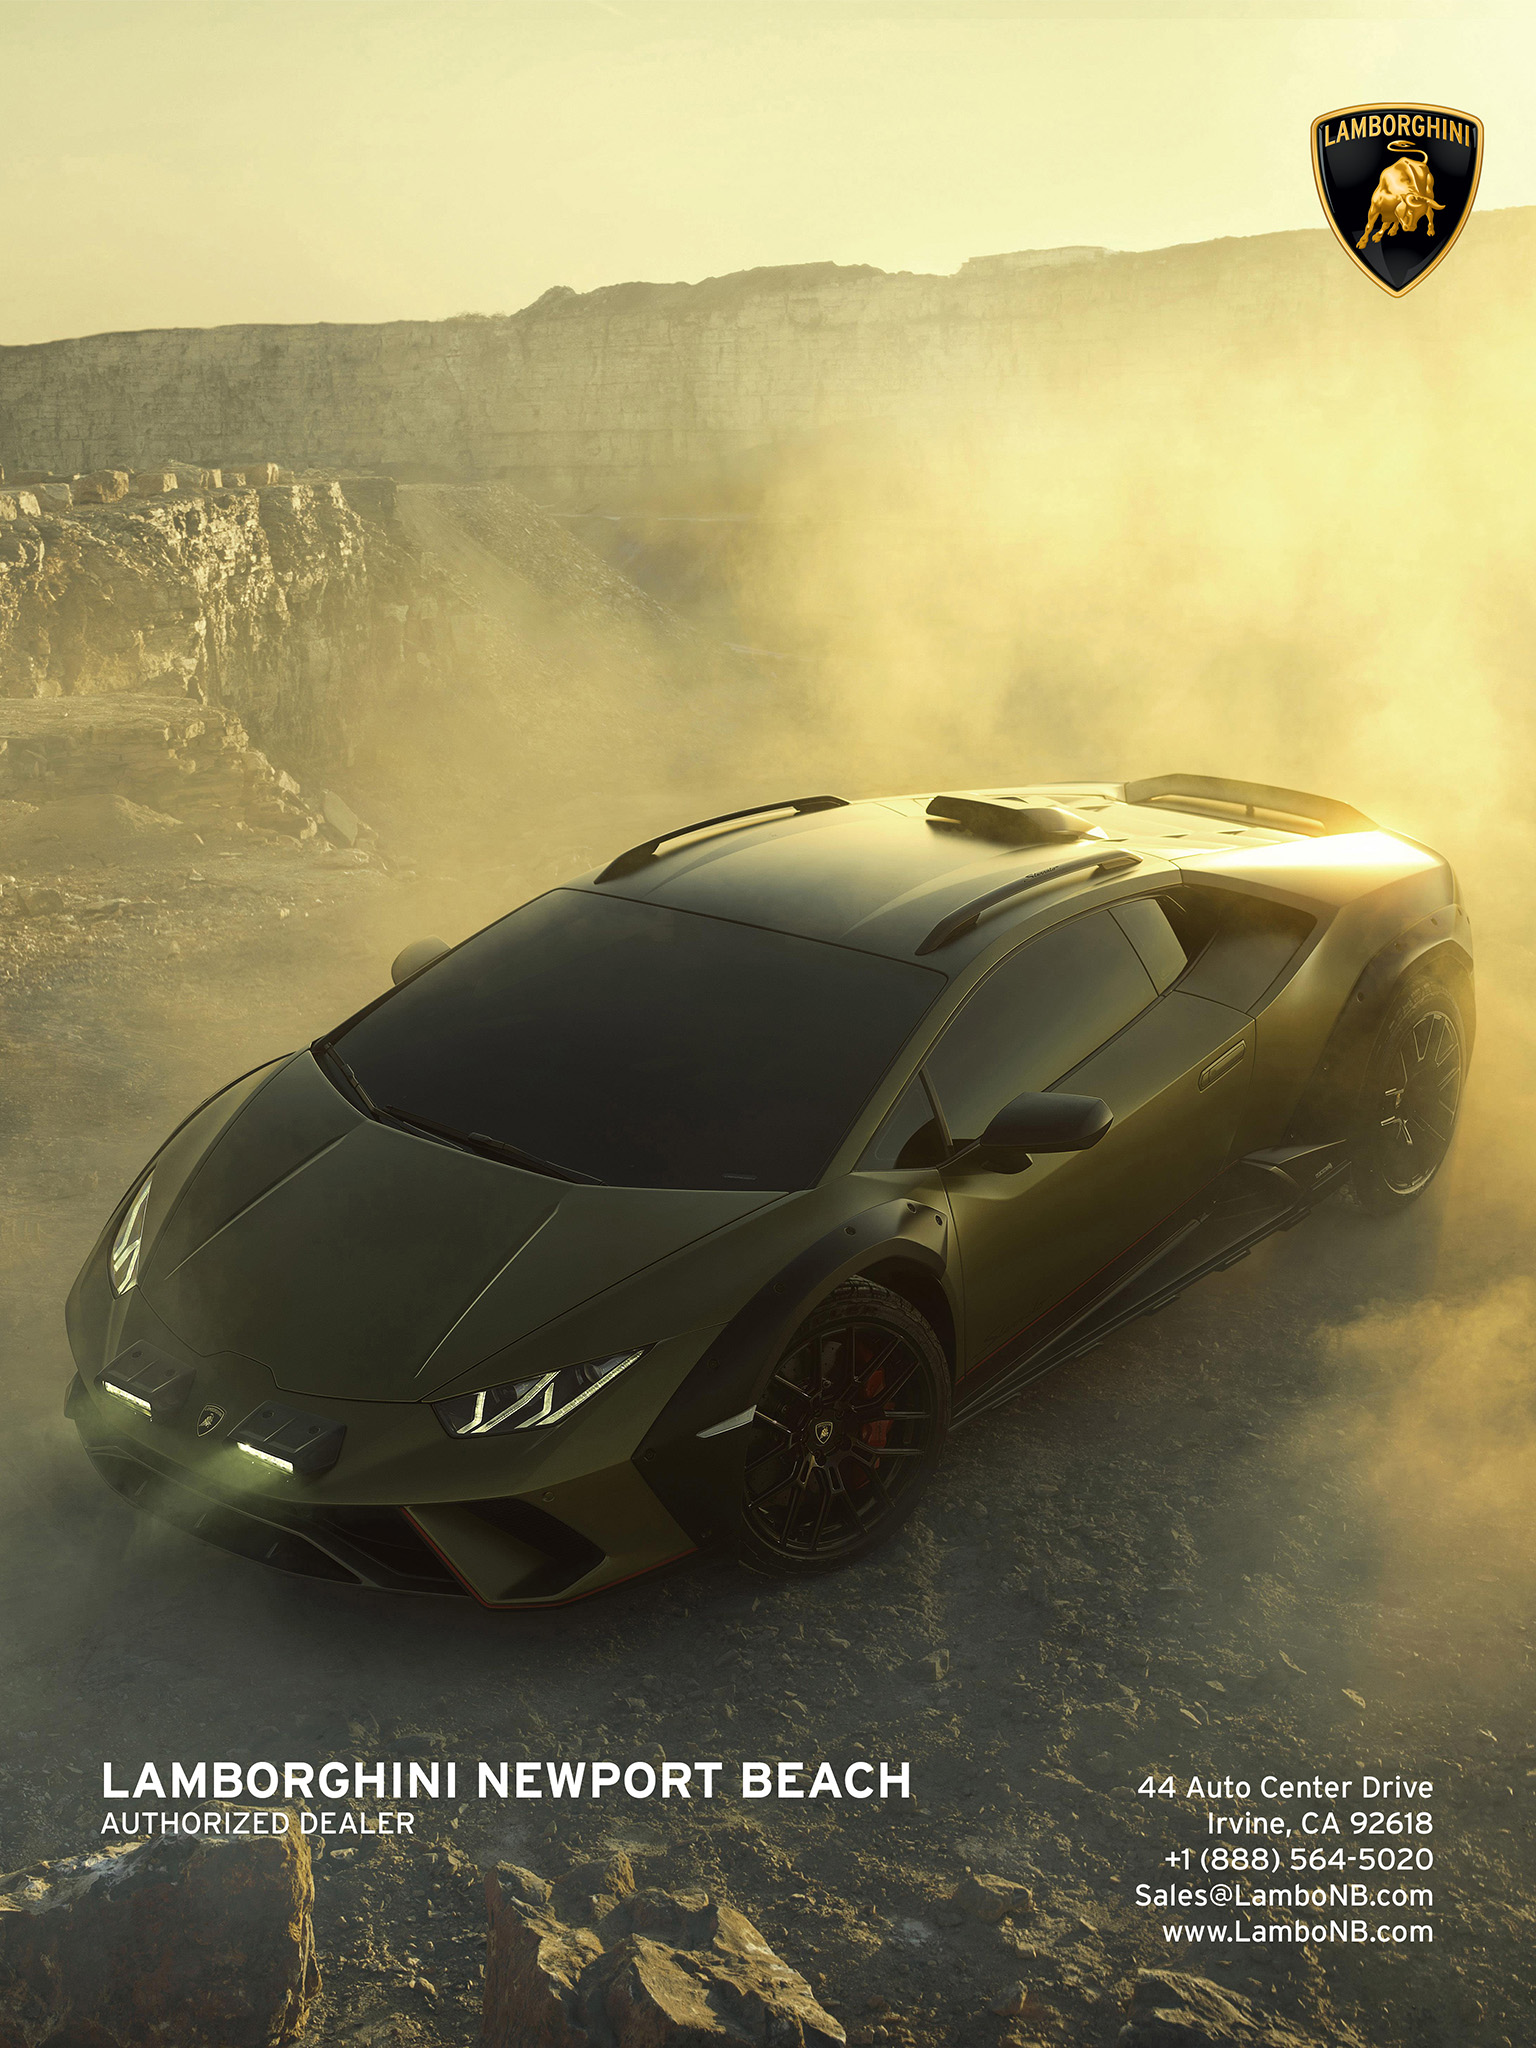 Lamborghini Newport